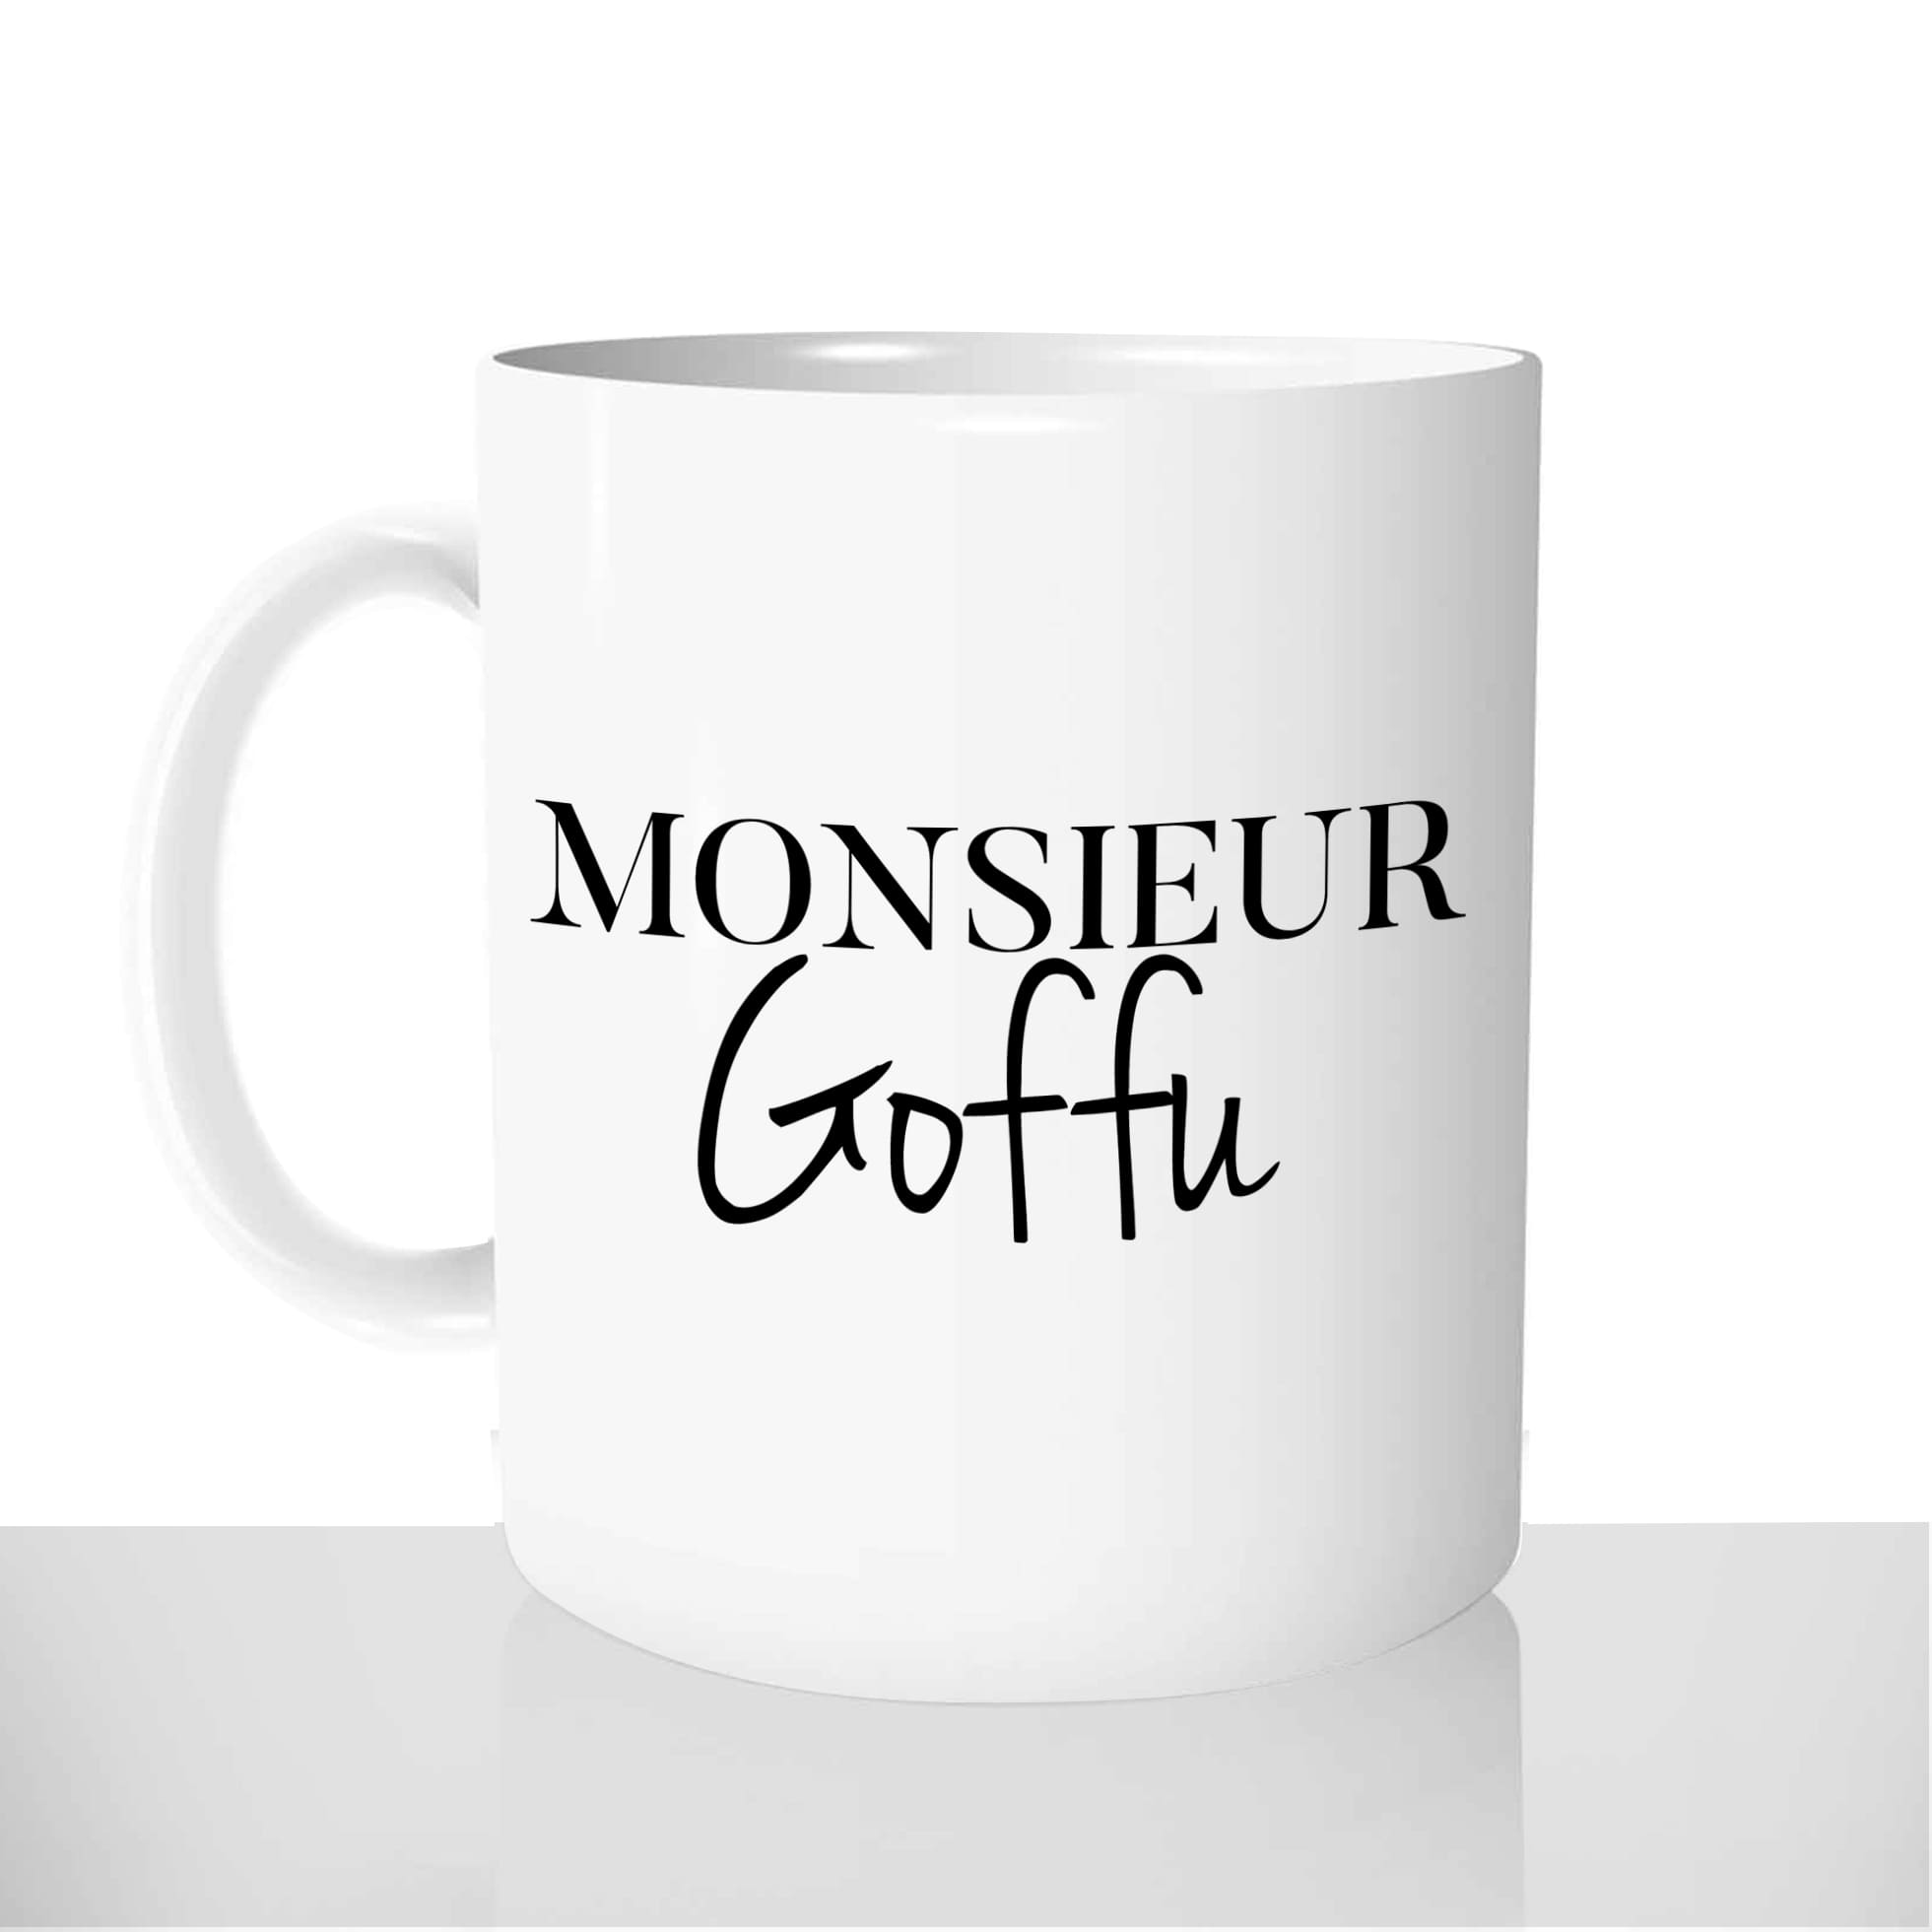 mug-blanc-brillant-personnalisé-offrir-monsieur-goffu-corse-moche-drole-anniversaire-noel-amis-fun-personnalisable-idée-cadeau-original